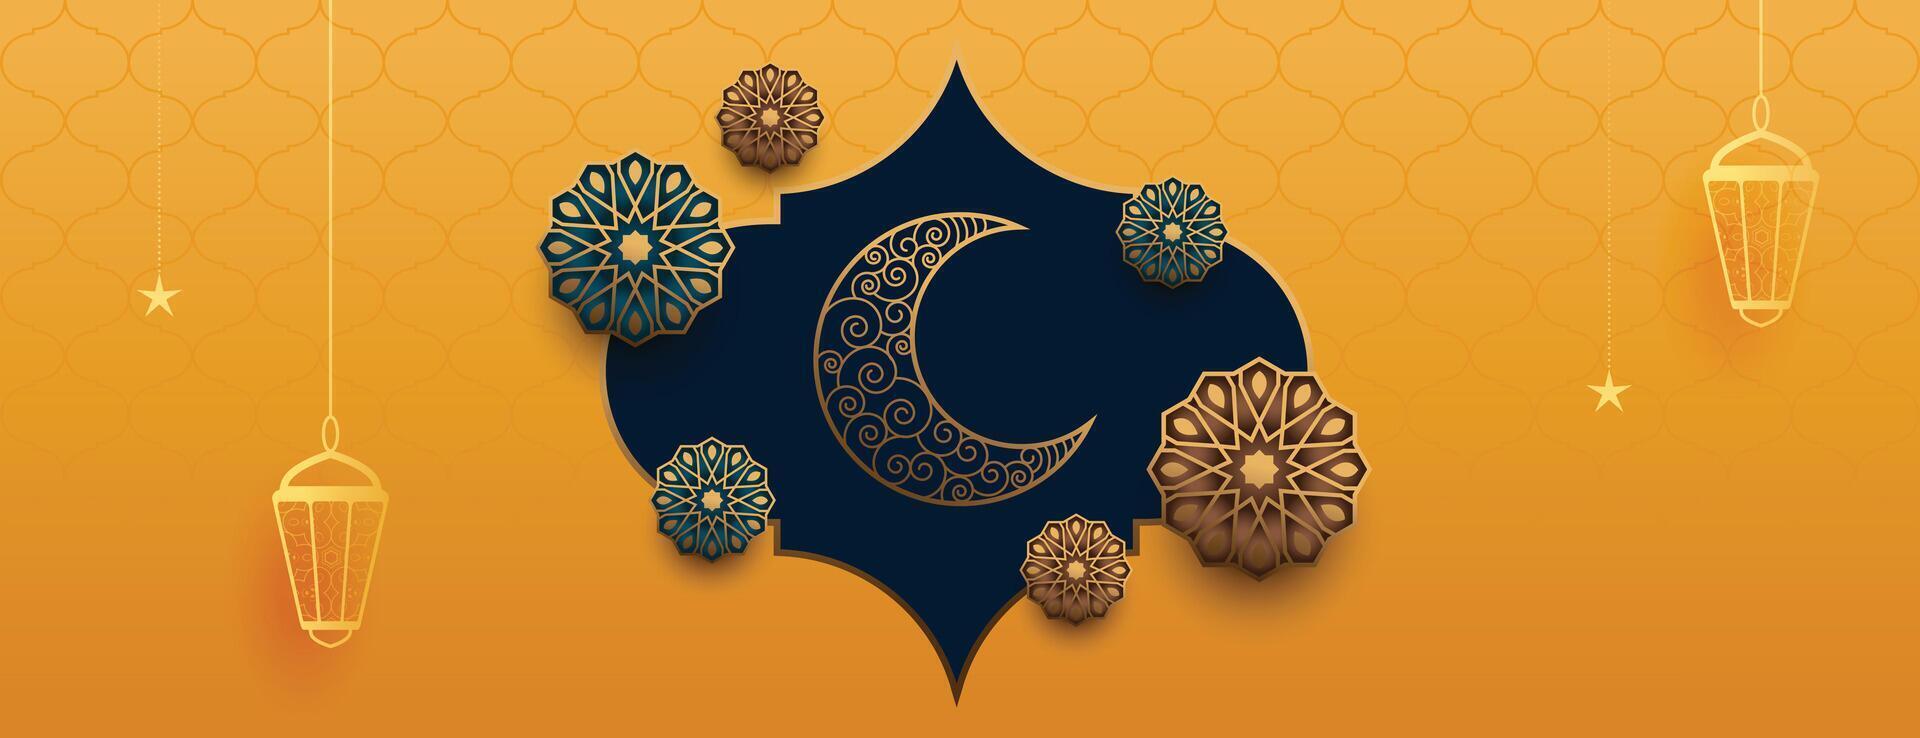 realistisch dekorativ eid Festival islamisch Banner Design vektor